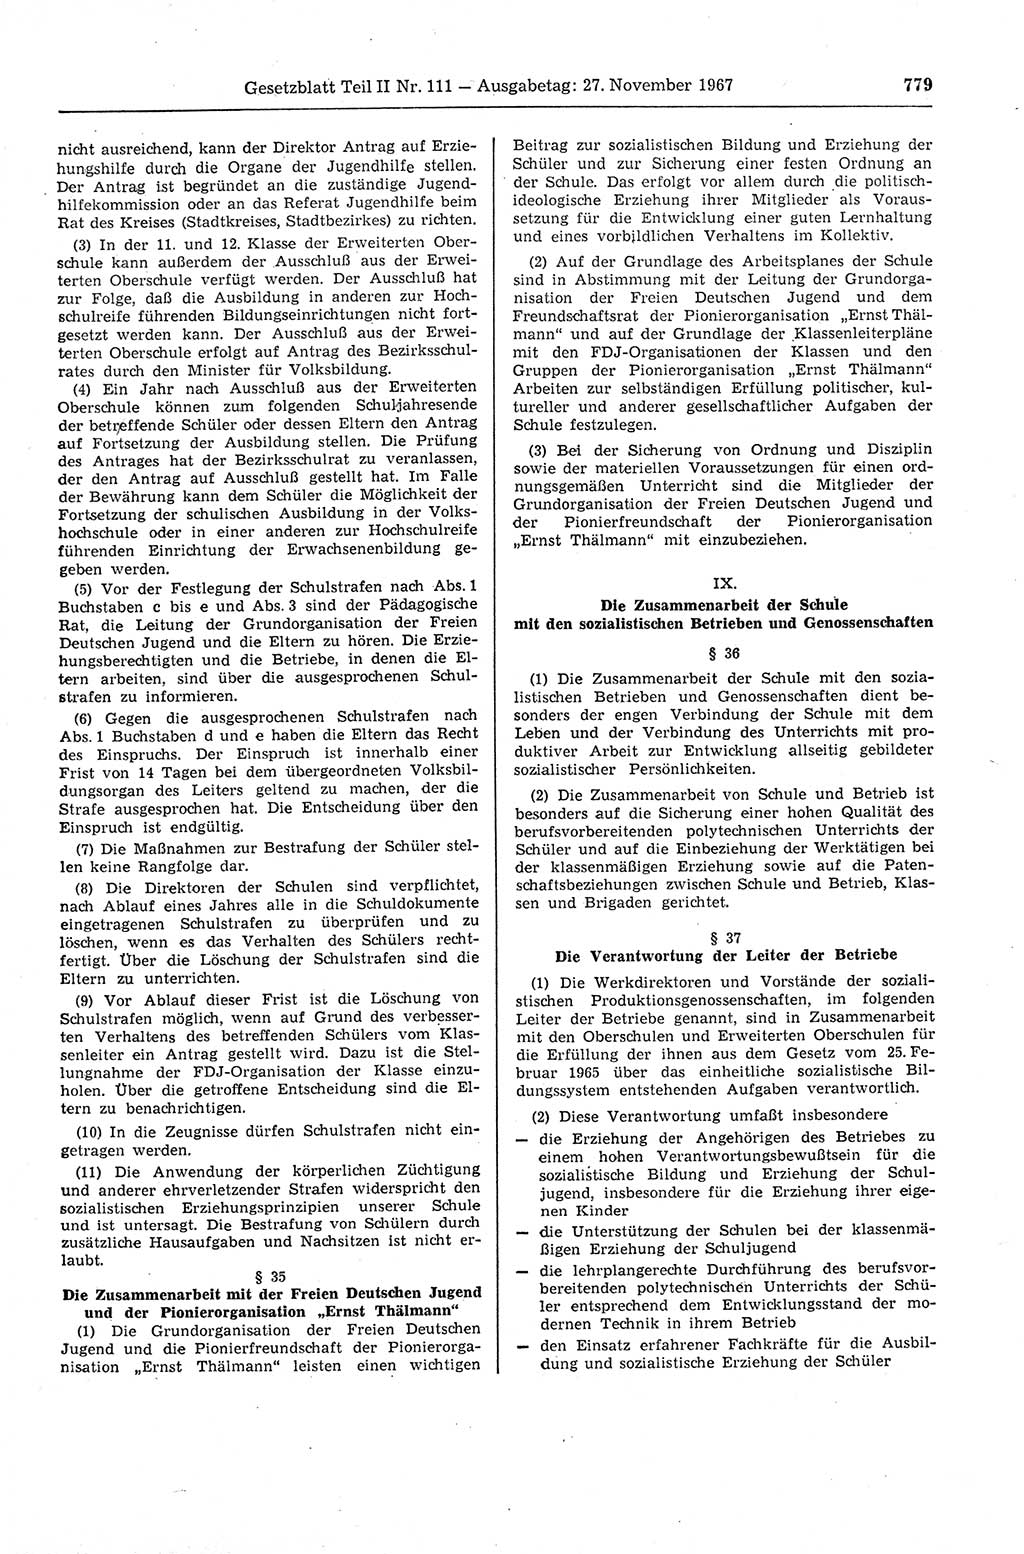 Gesetzblatt (GBl.) der Deutschen Demokratischen Republik (DDR) Teil ⅠⅠ 1967, Seite 779 (GBl. DDR ⅠⅠ 1967, S. 779)